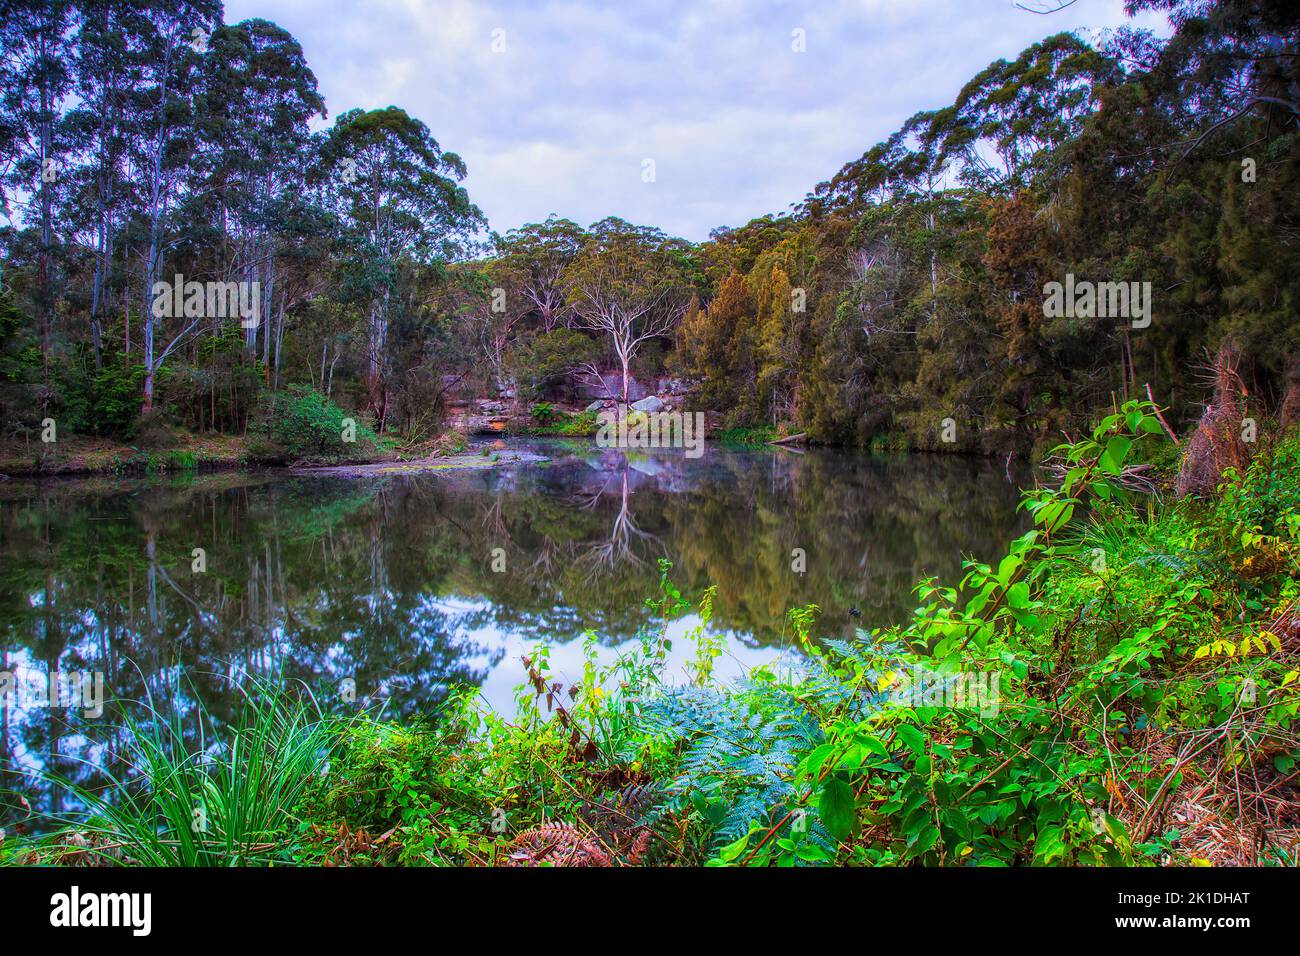 Lane Cover River und Nationalpark in Sydney - Landschaft mit ruhiger Natur bei Sonnenaufgang. Stockfoto